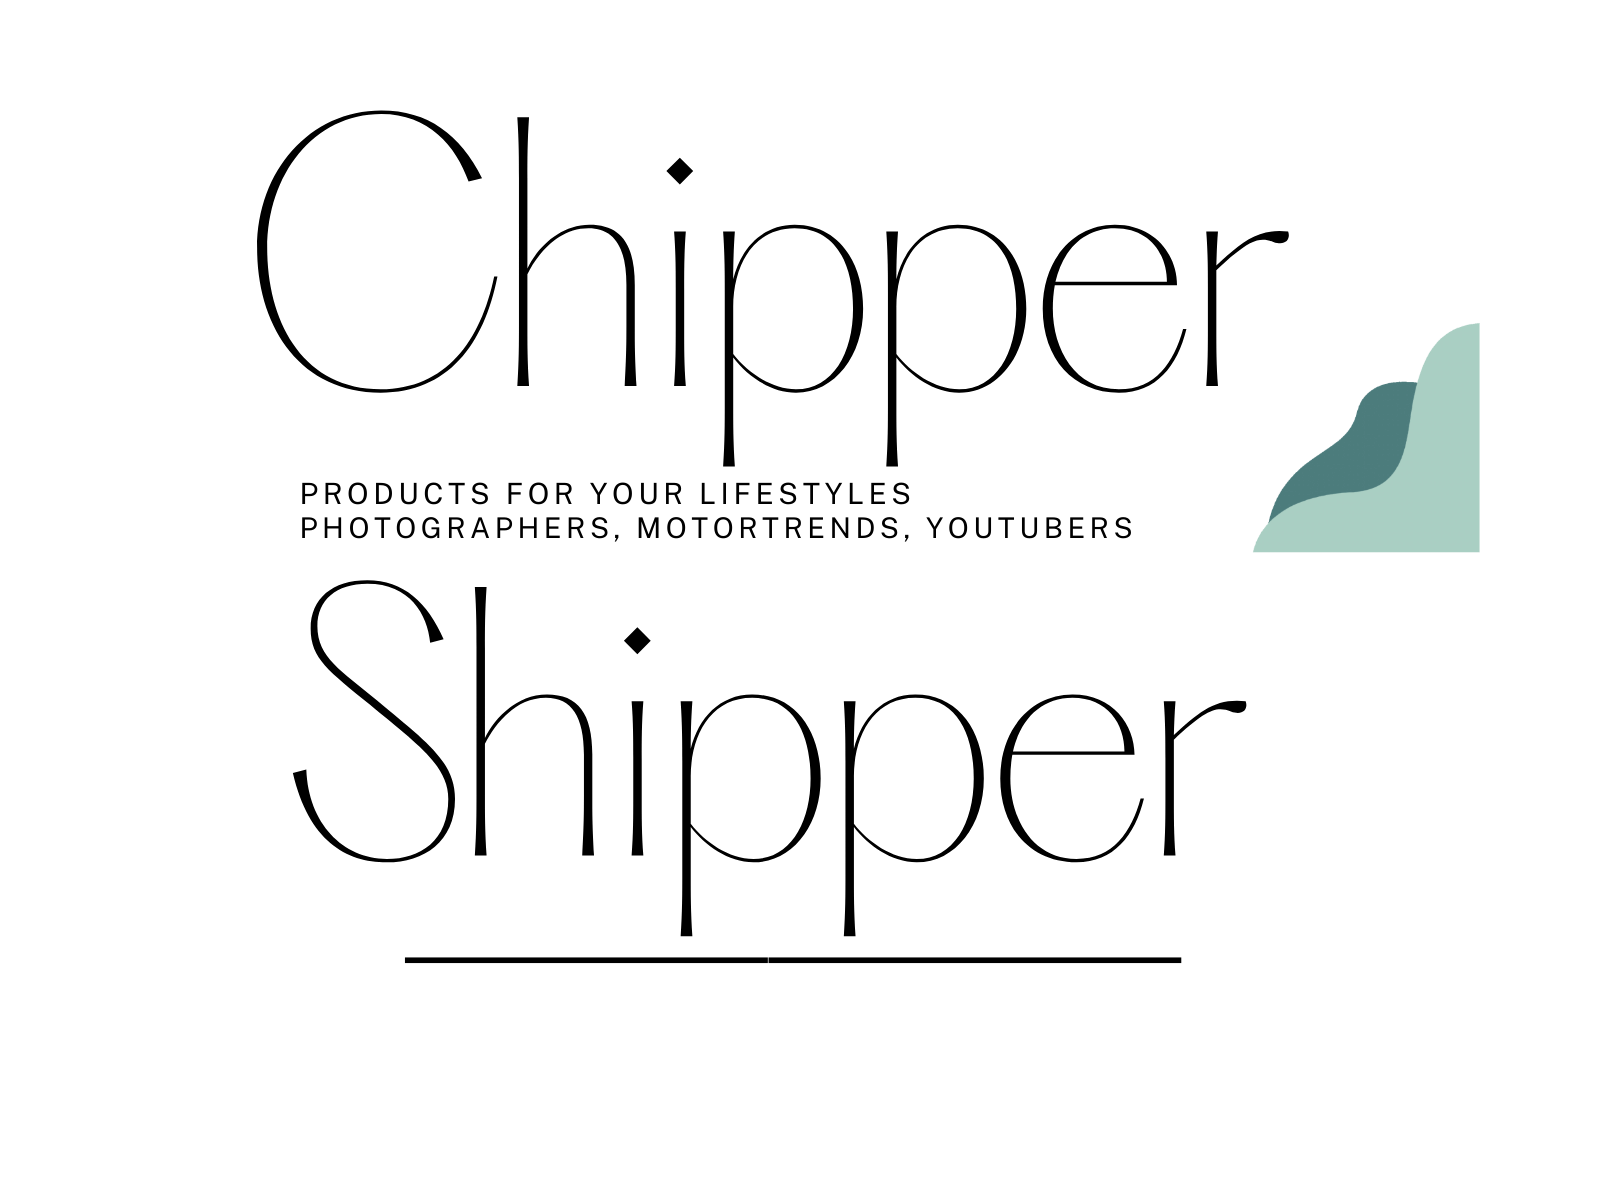 Chipper Shipper